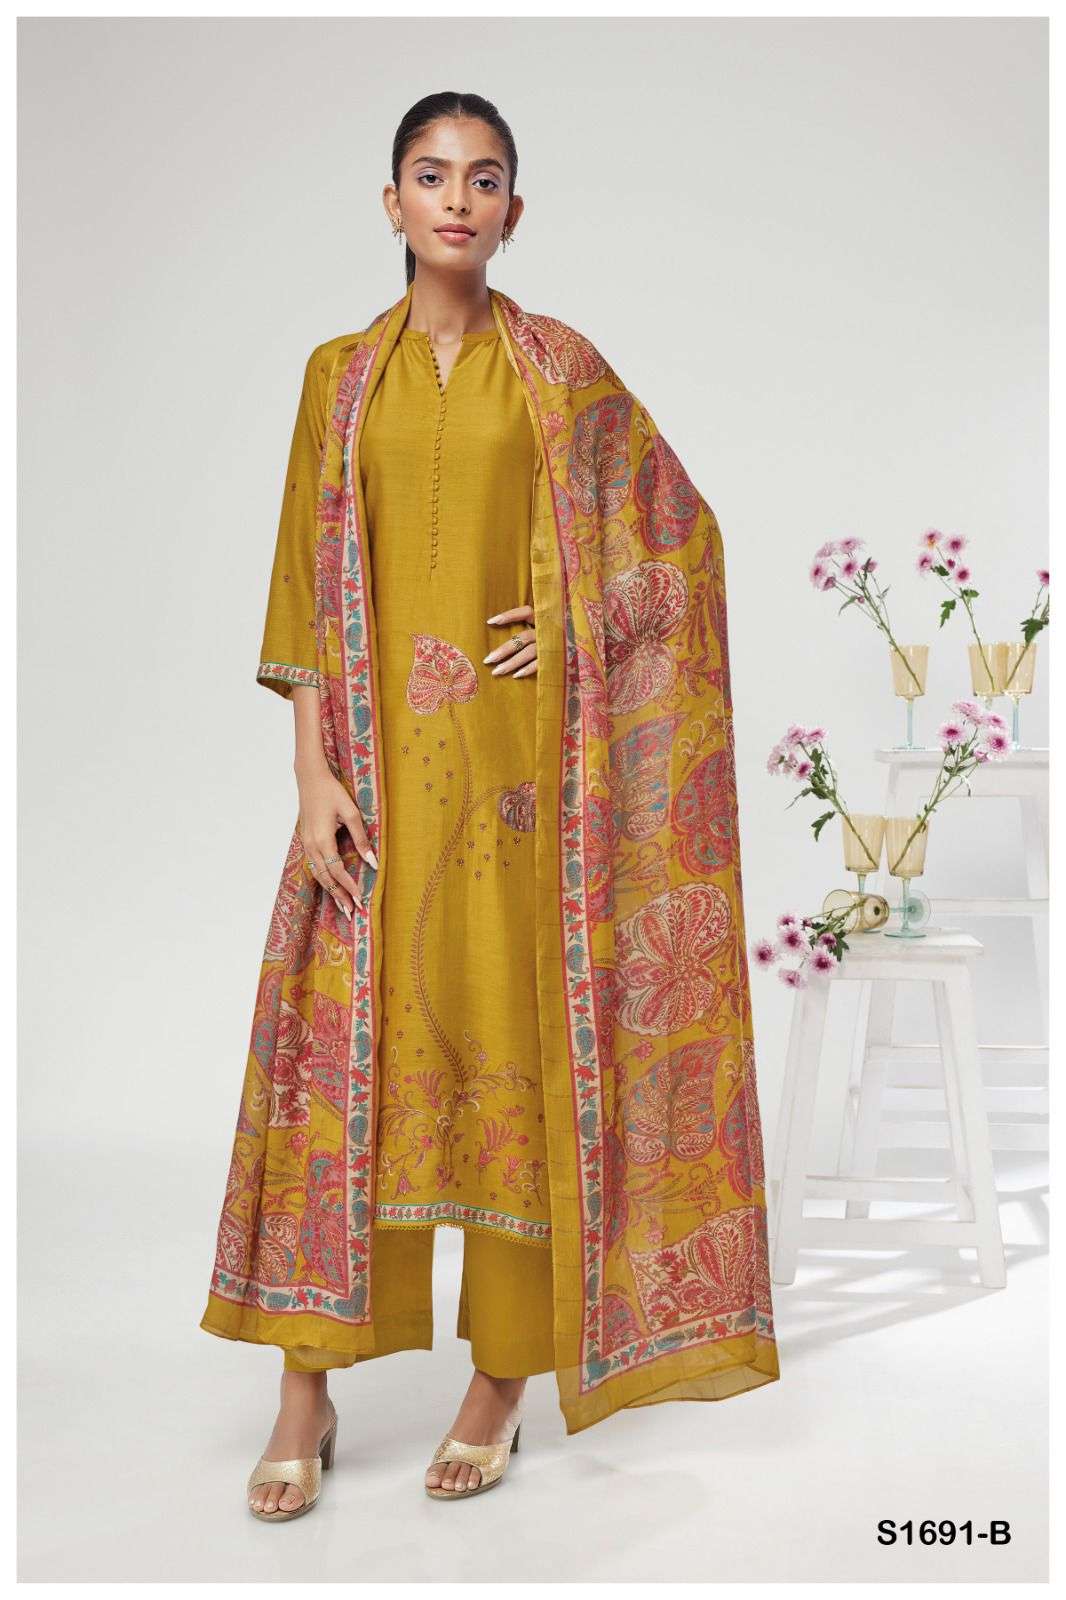 ganga victoria 1691 series exclusive designer salwar kameez catalogue online dealer surat 